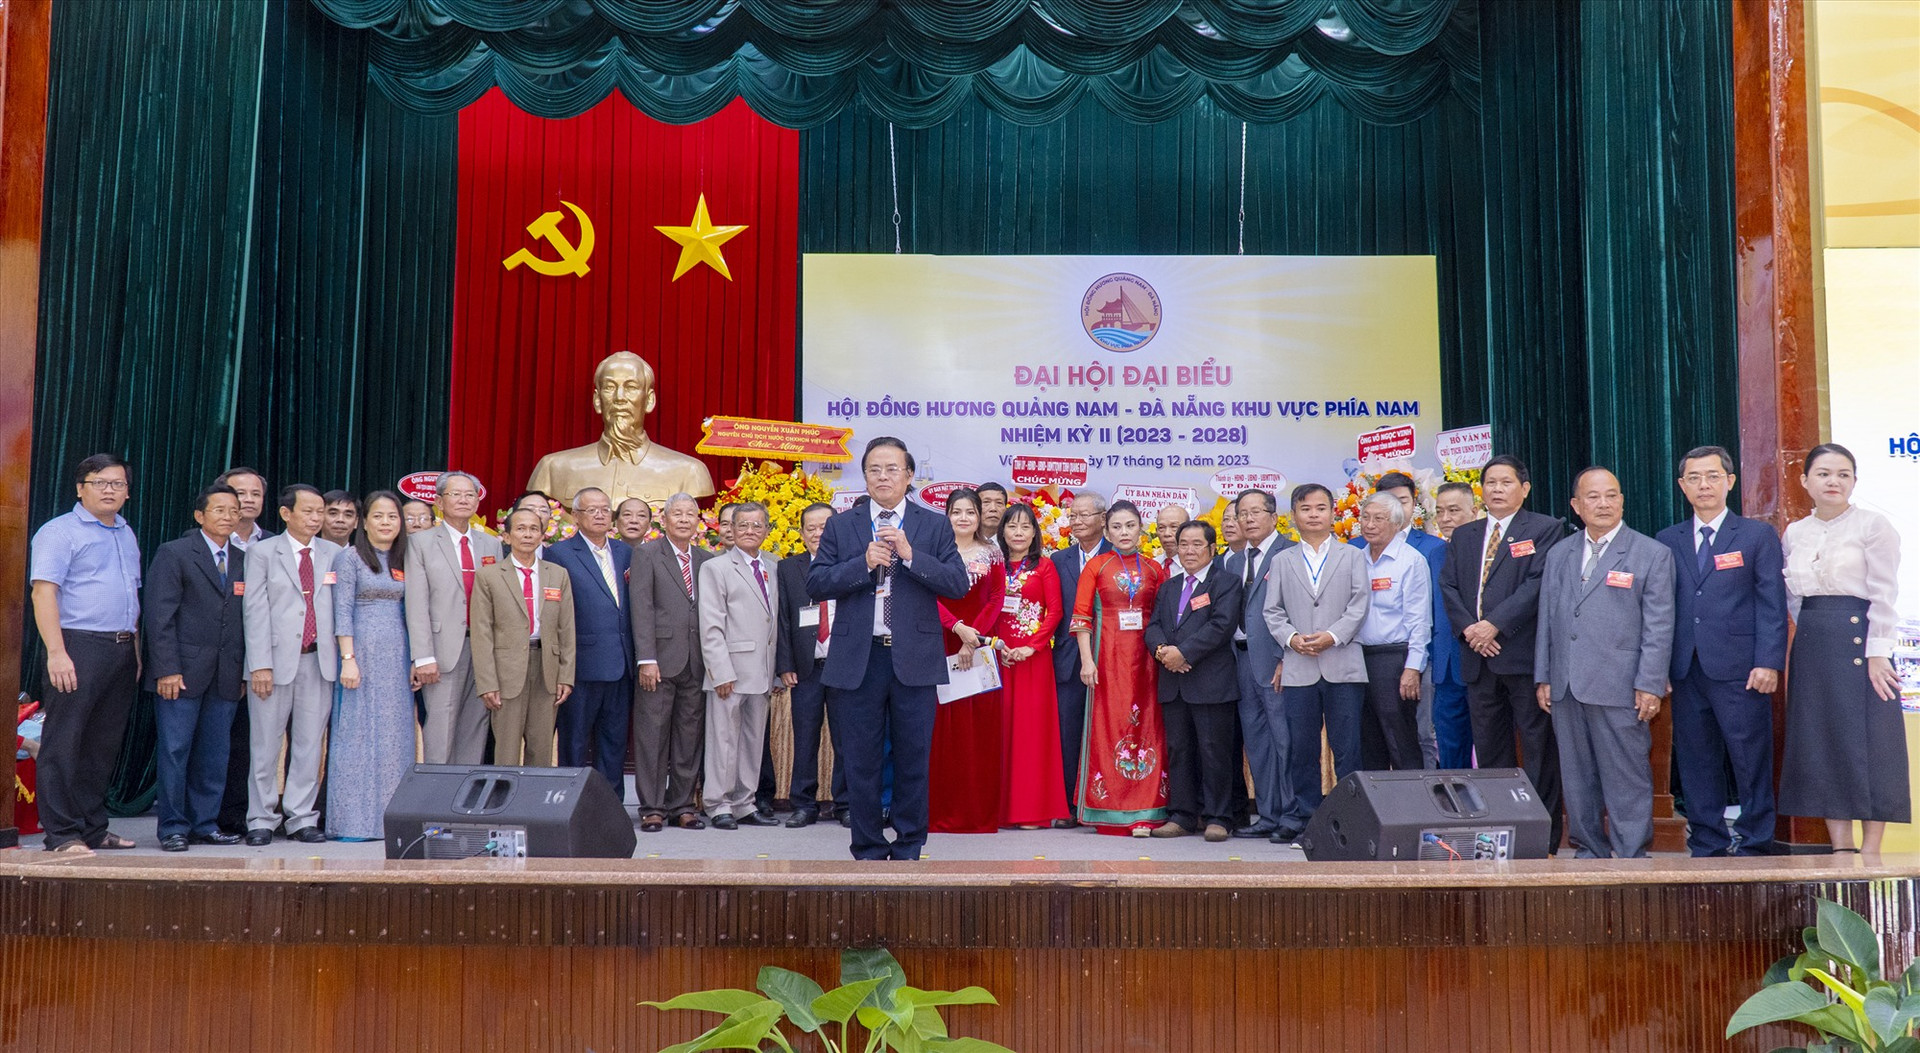 Ra mắt Ban chấp hành Hội đồng hương Quảng Nam - Đà Nẵng khu vực phía Nam nhiệm kỳ II (2023 - 2028). Ảnh: P.V